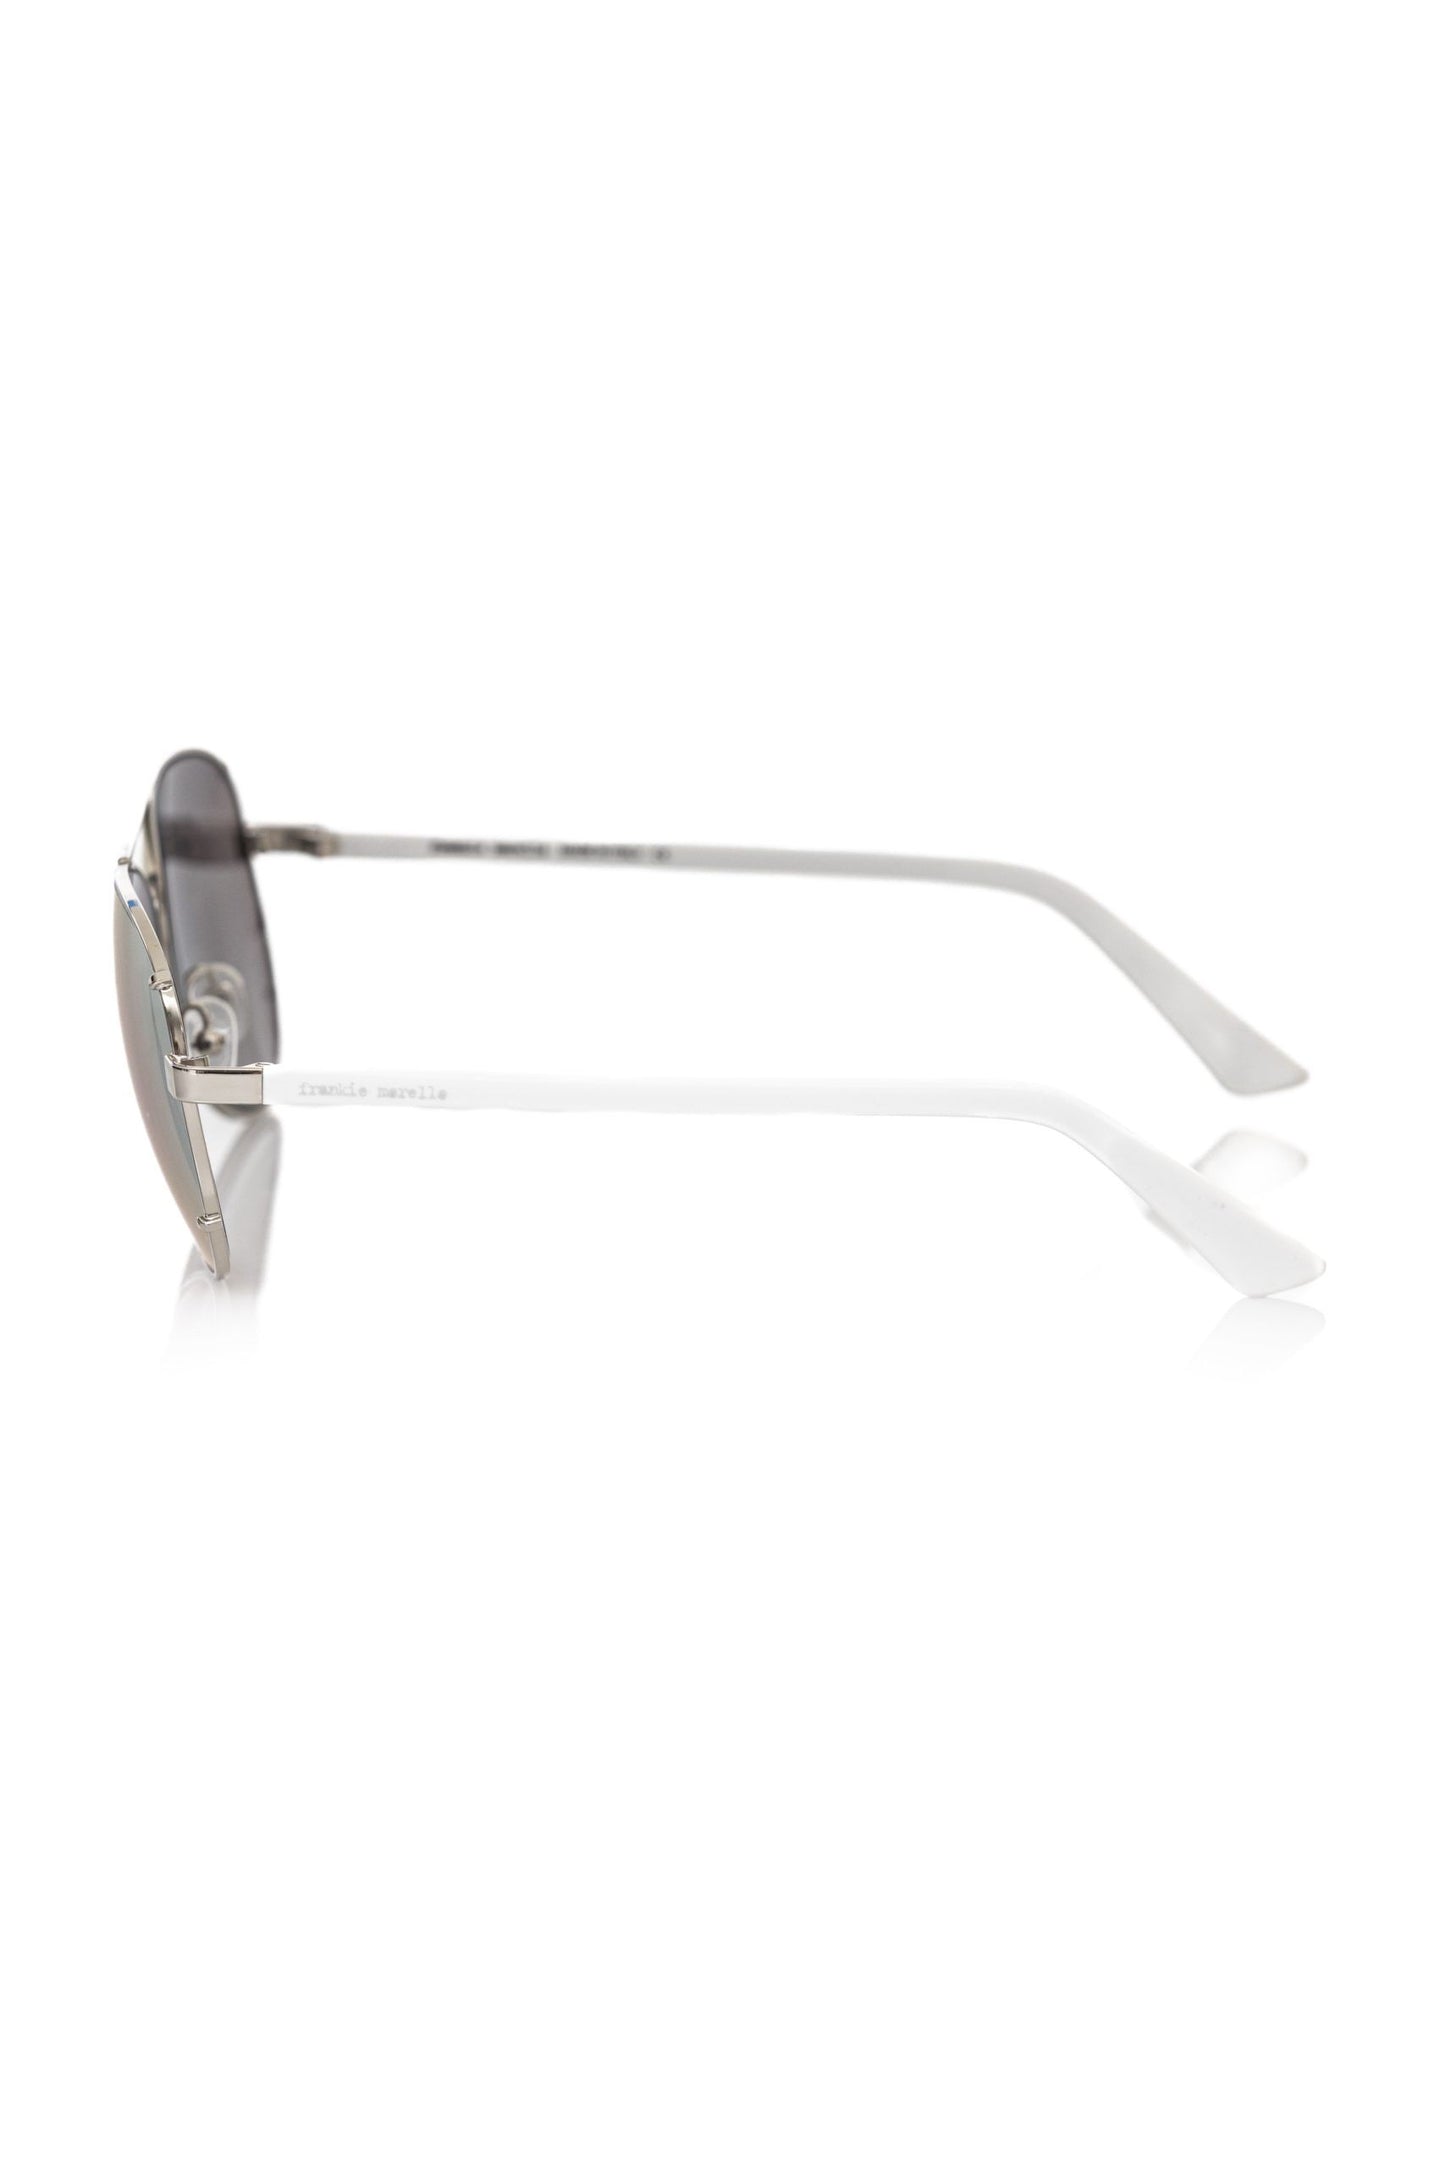 Frankie Morello FRMO-22121 Silver Metallic Fibre Sunglasses